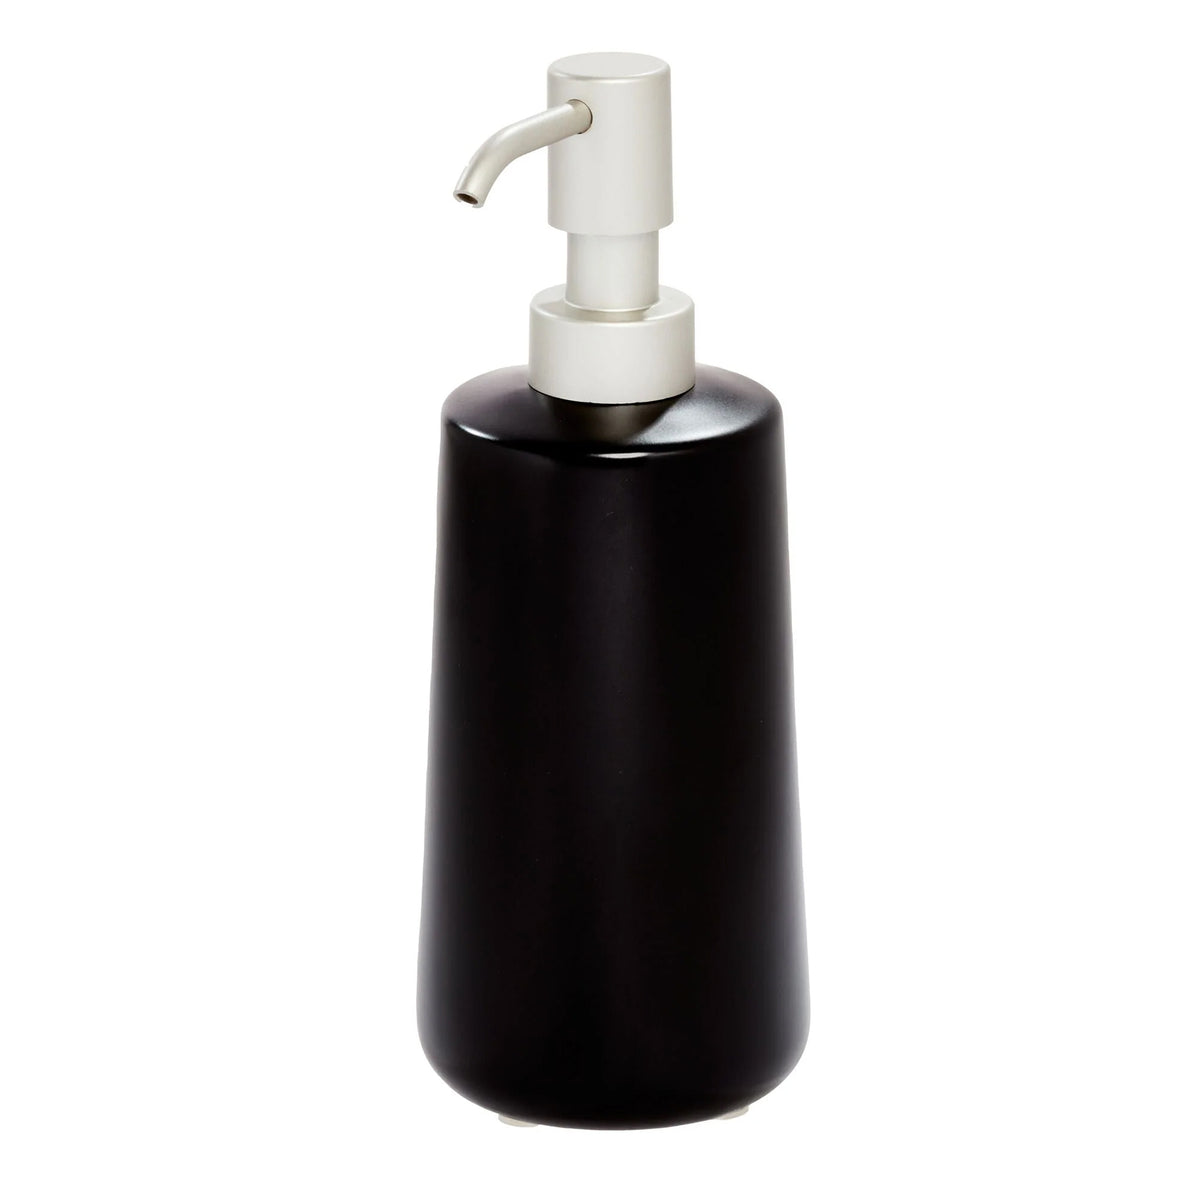 Liquid soap dispenser, Black